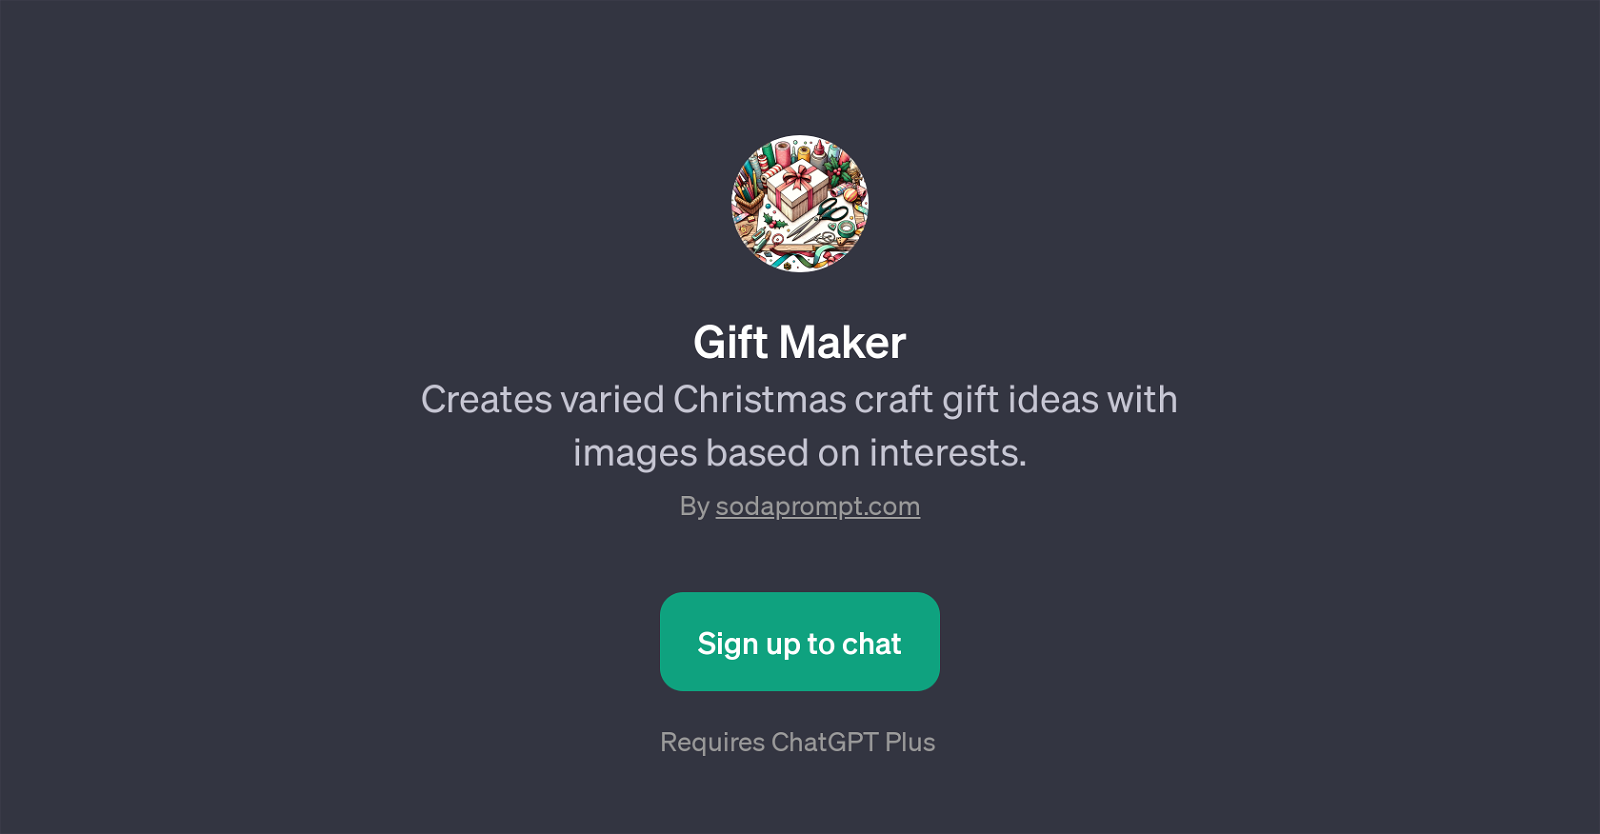 Gift Maker website